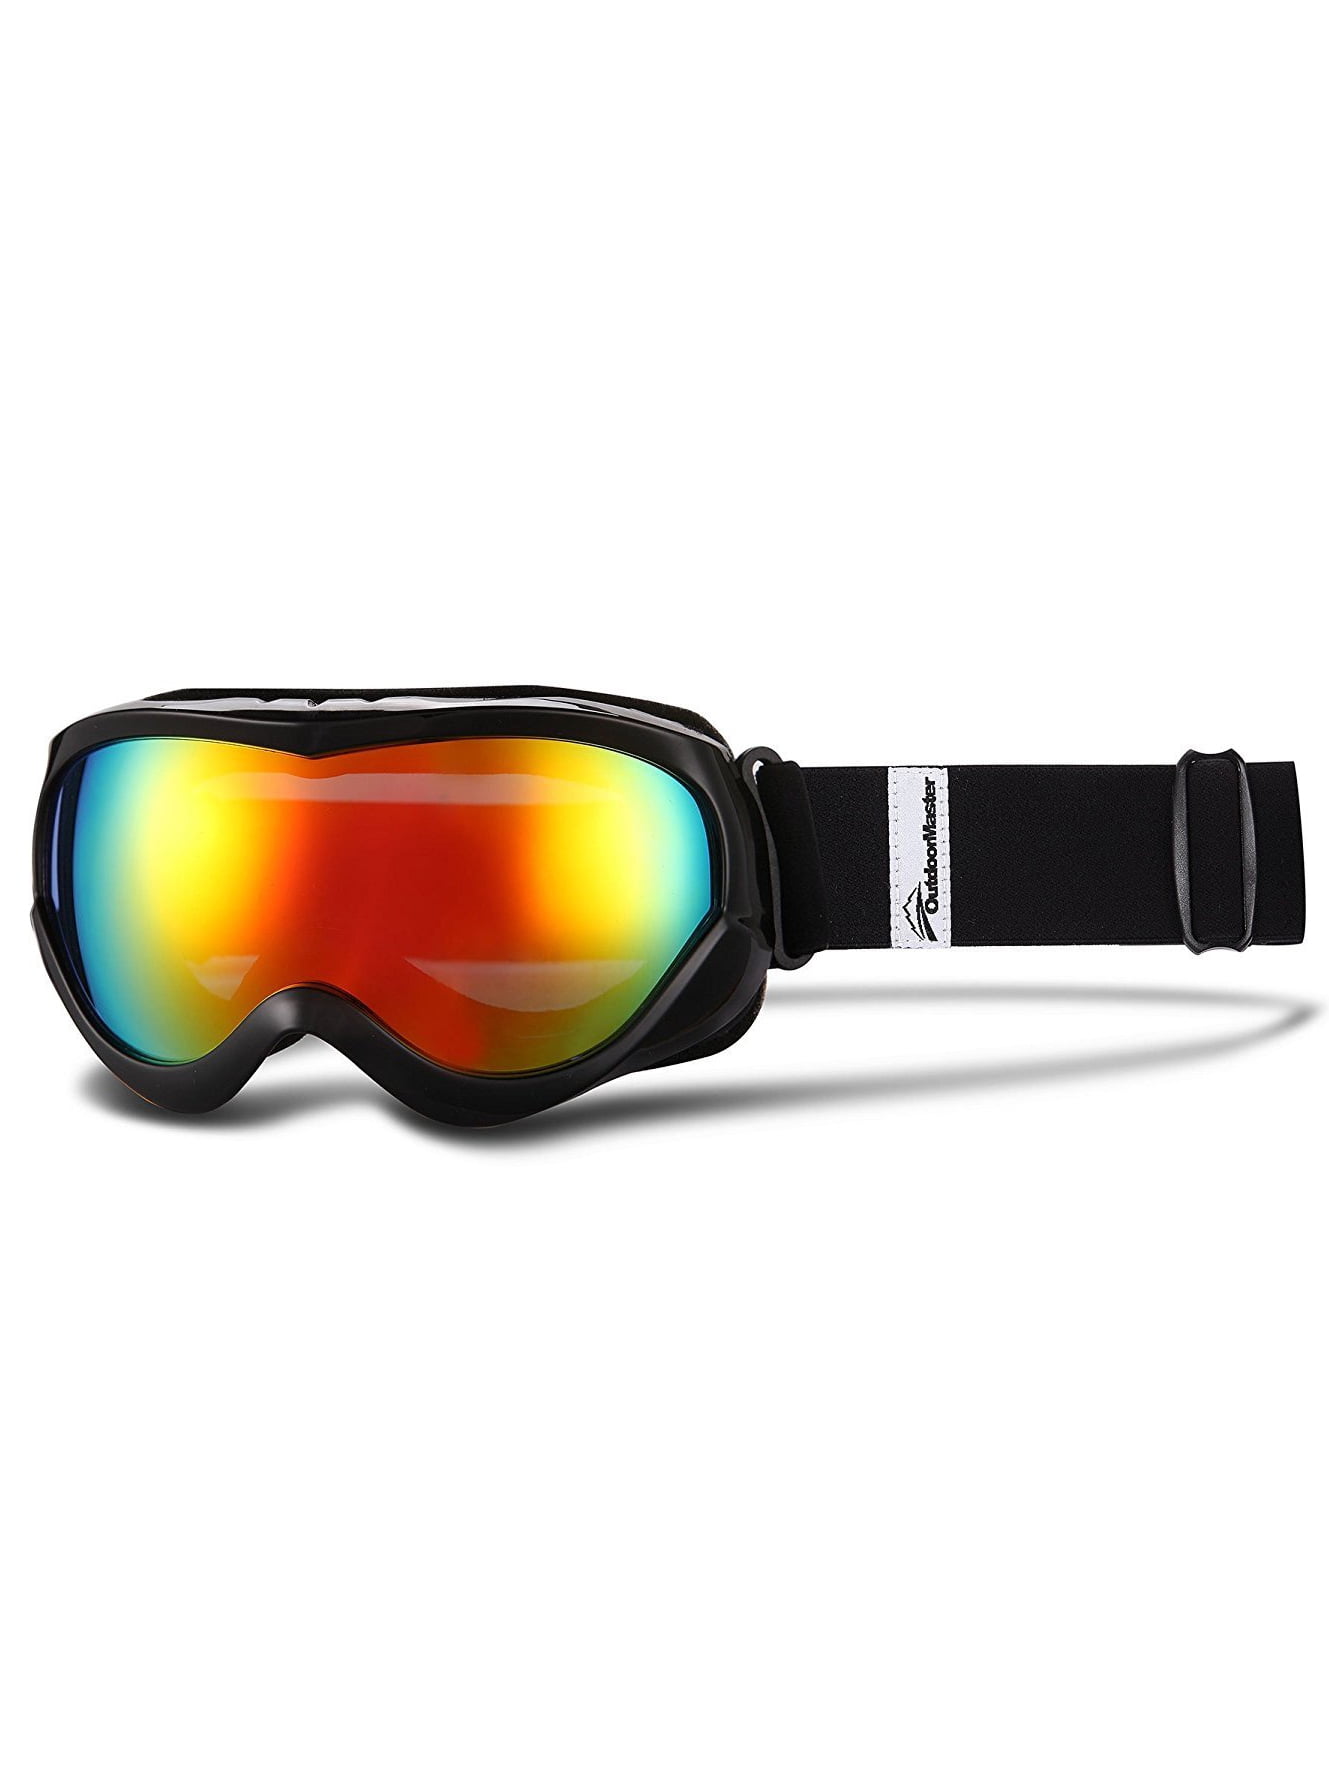 OutdoorMaster Kids Ski Goggles, Black - Grey Lens Red VLT 14%